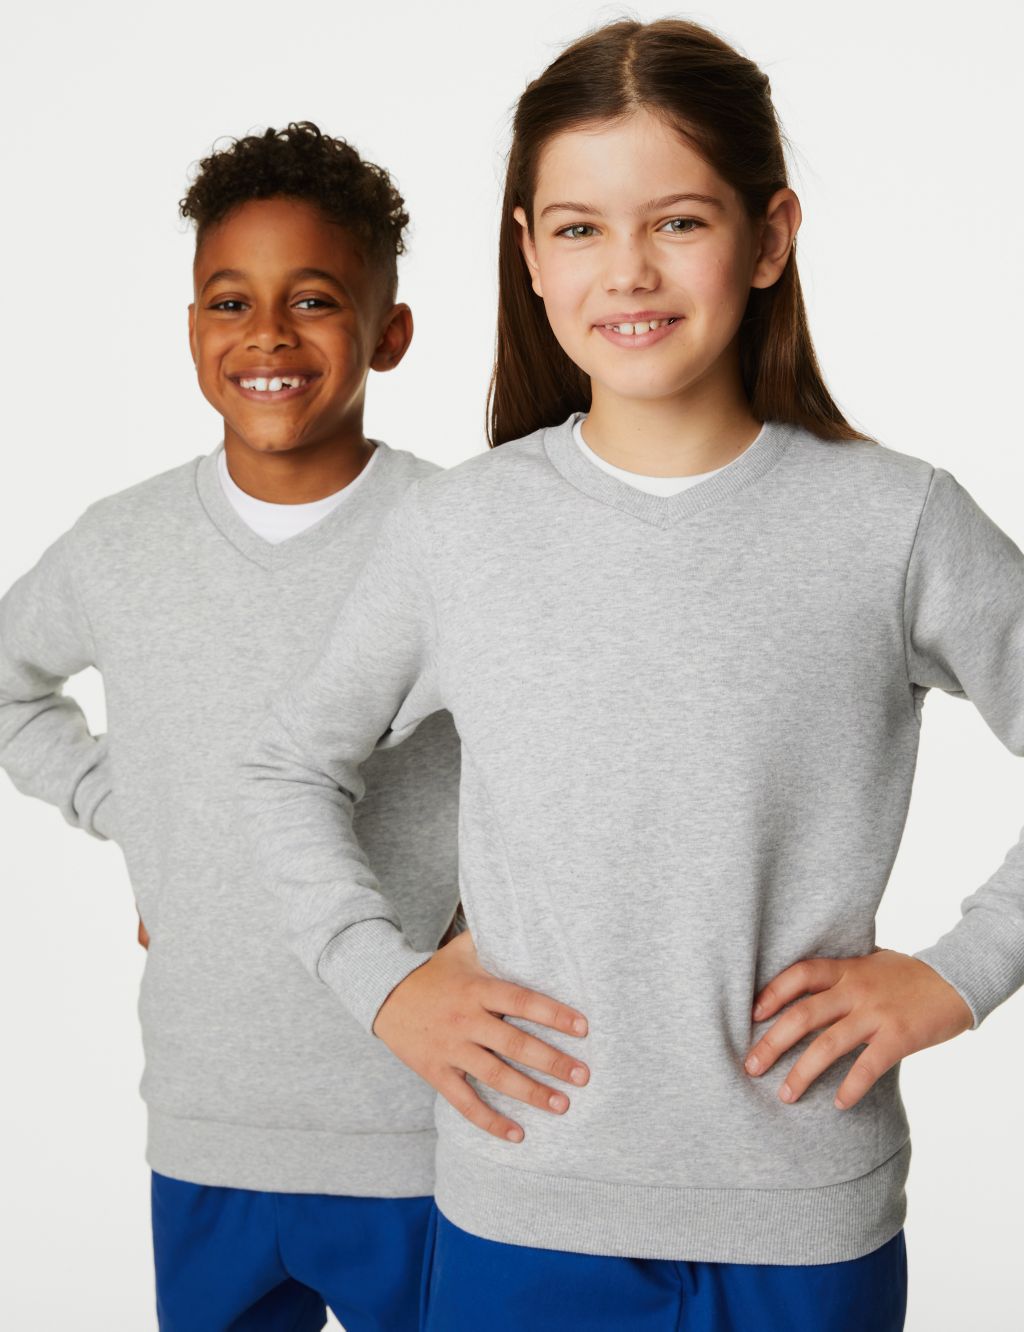 Unisex Cotton V-Neck Sweatshirt (2-16 Yrs) image 1